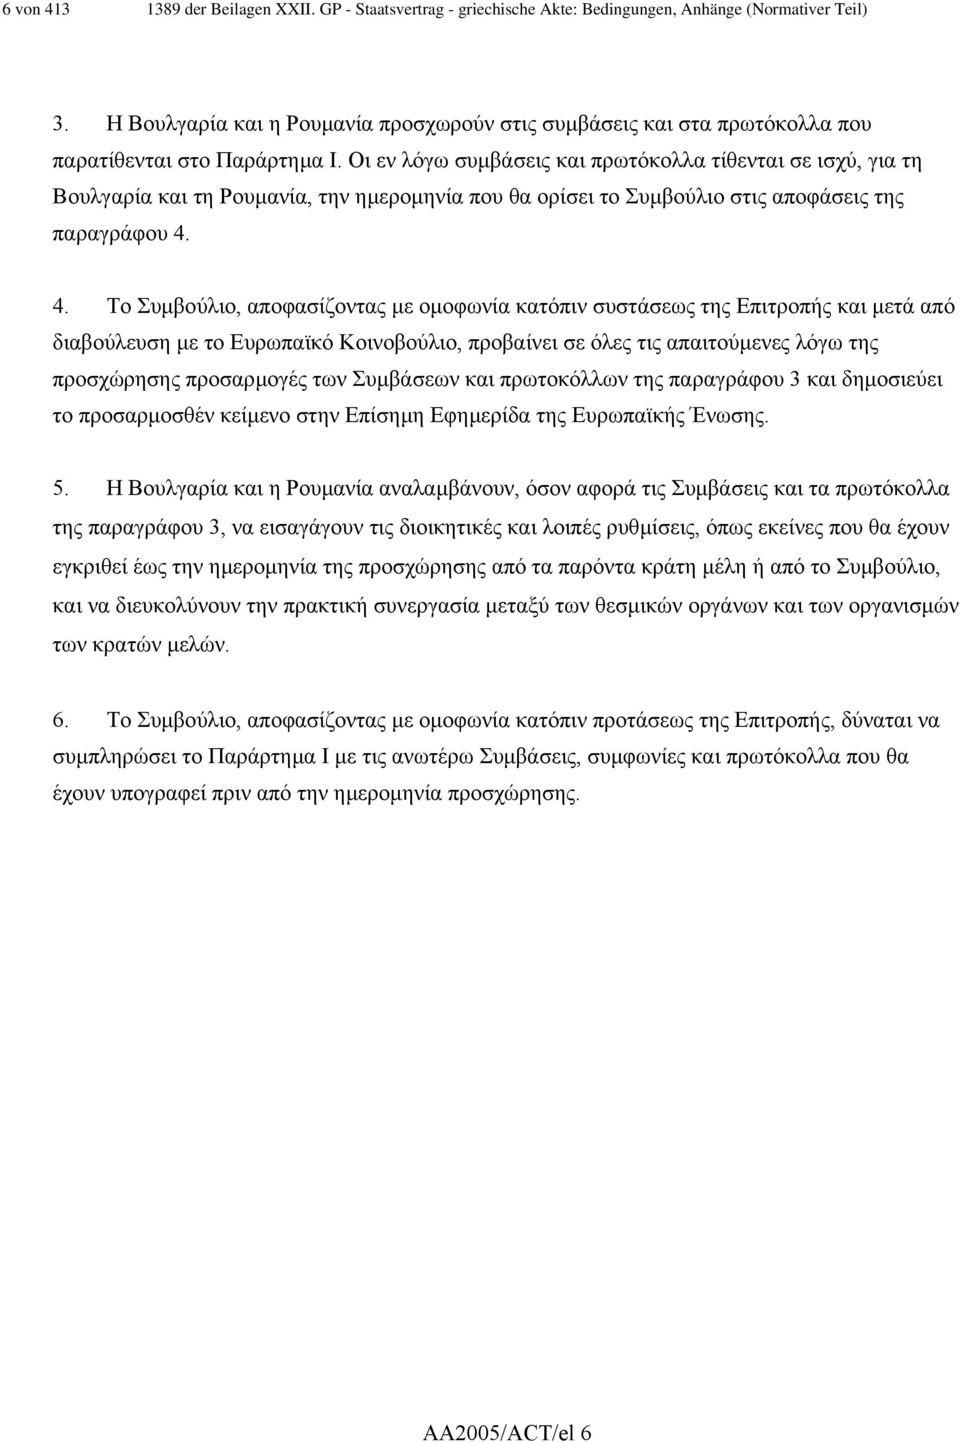 Οι εν λόγω συµβάσεις και πρωτόκολλα τίθενται σε ισχύ, για τη Βουλγαρία και τη Ρουµανία, την ηµεροµηνία που θα ορίσει το Συµβούλιο στις αποφάσεις της παραγράφου 4.